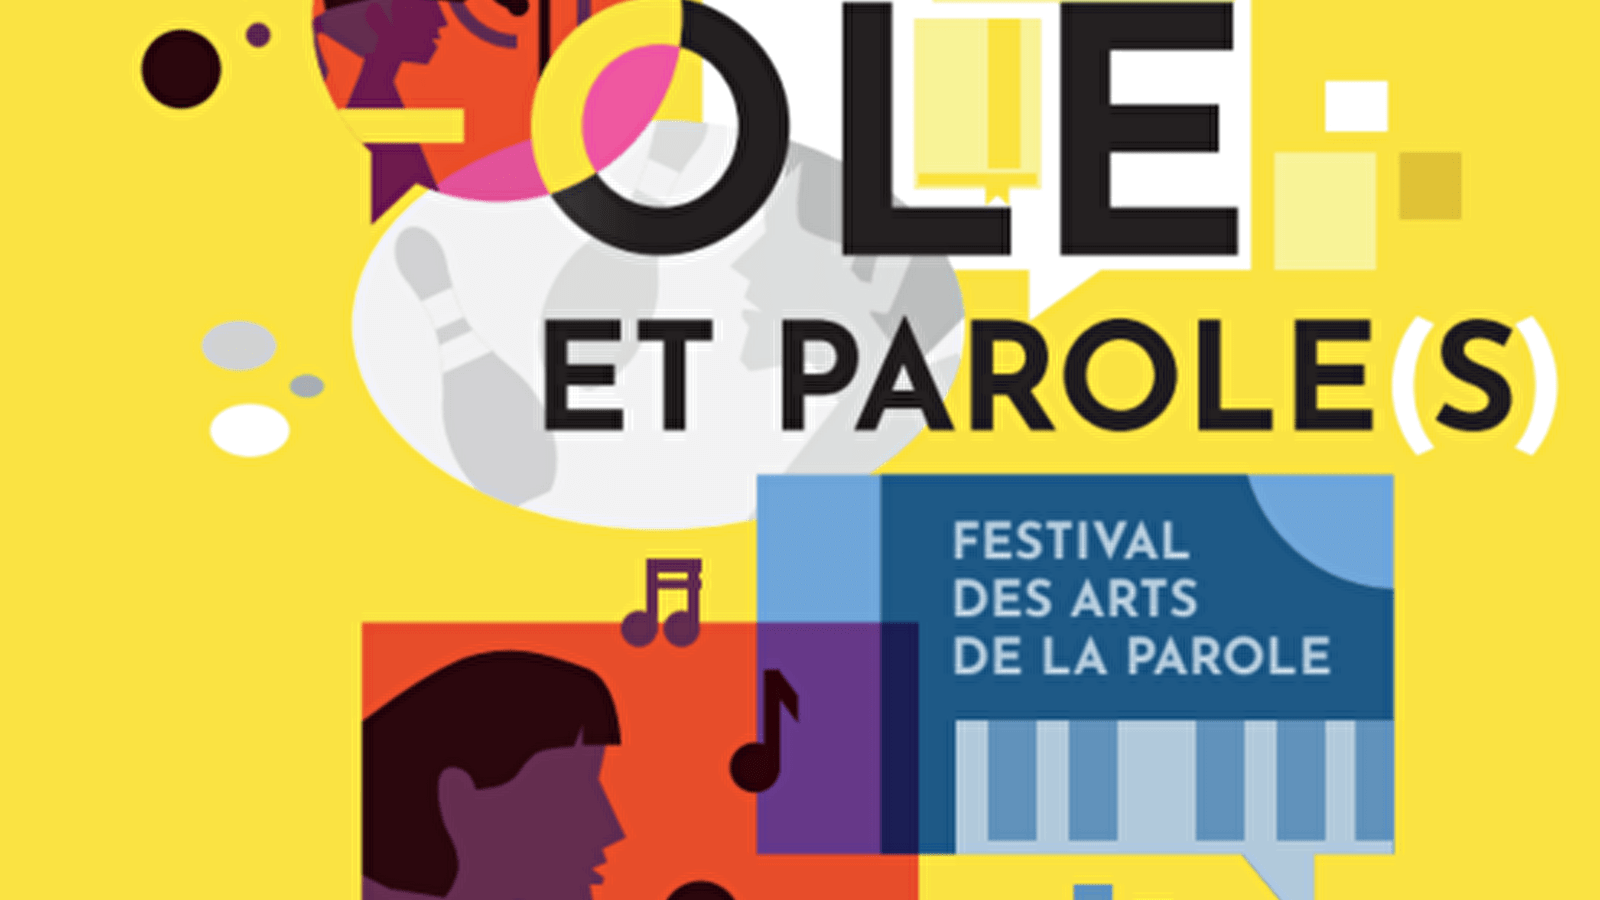 Parole and Parole(s) Festival